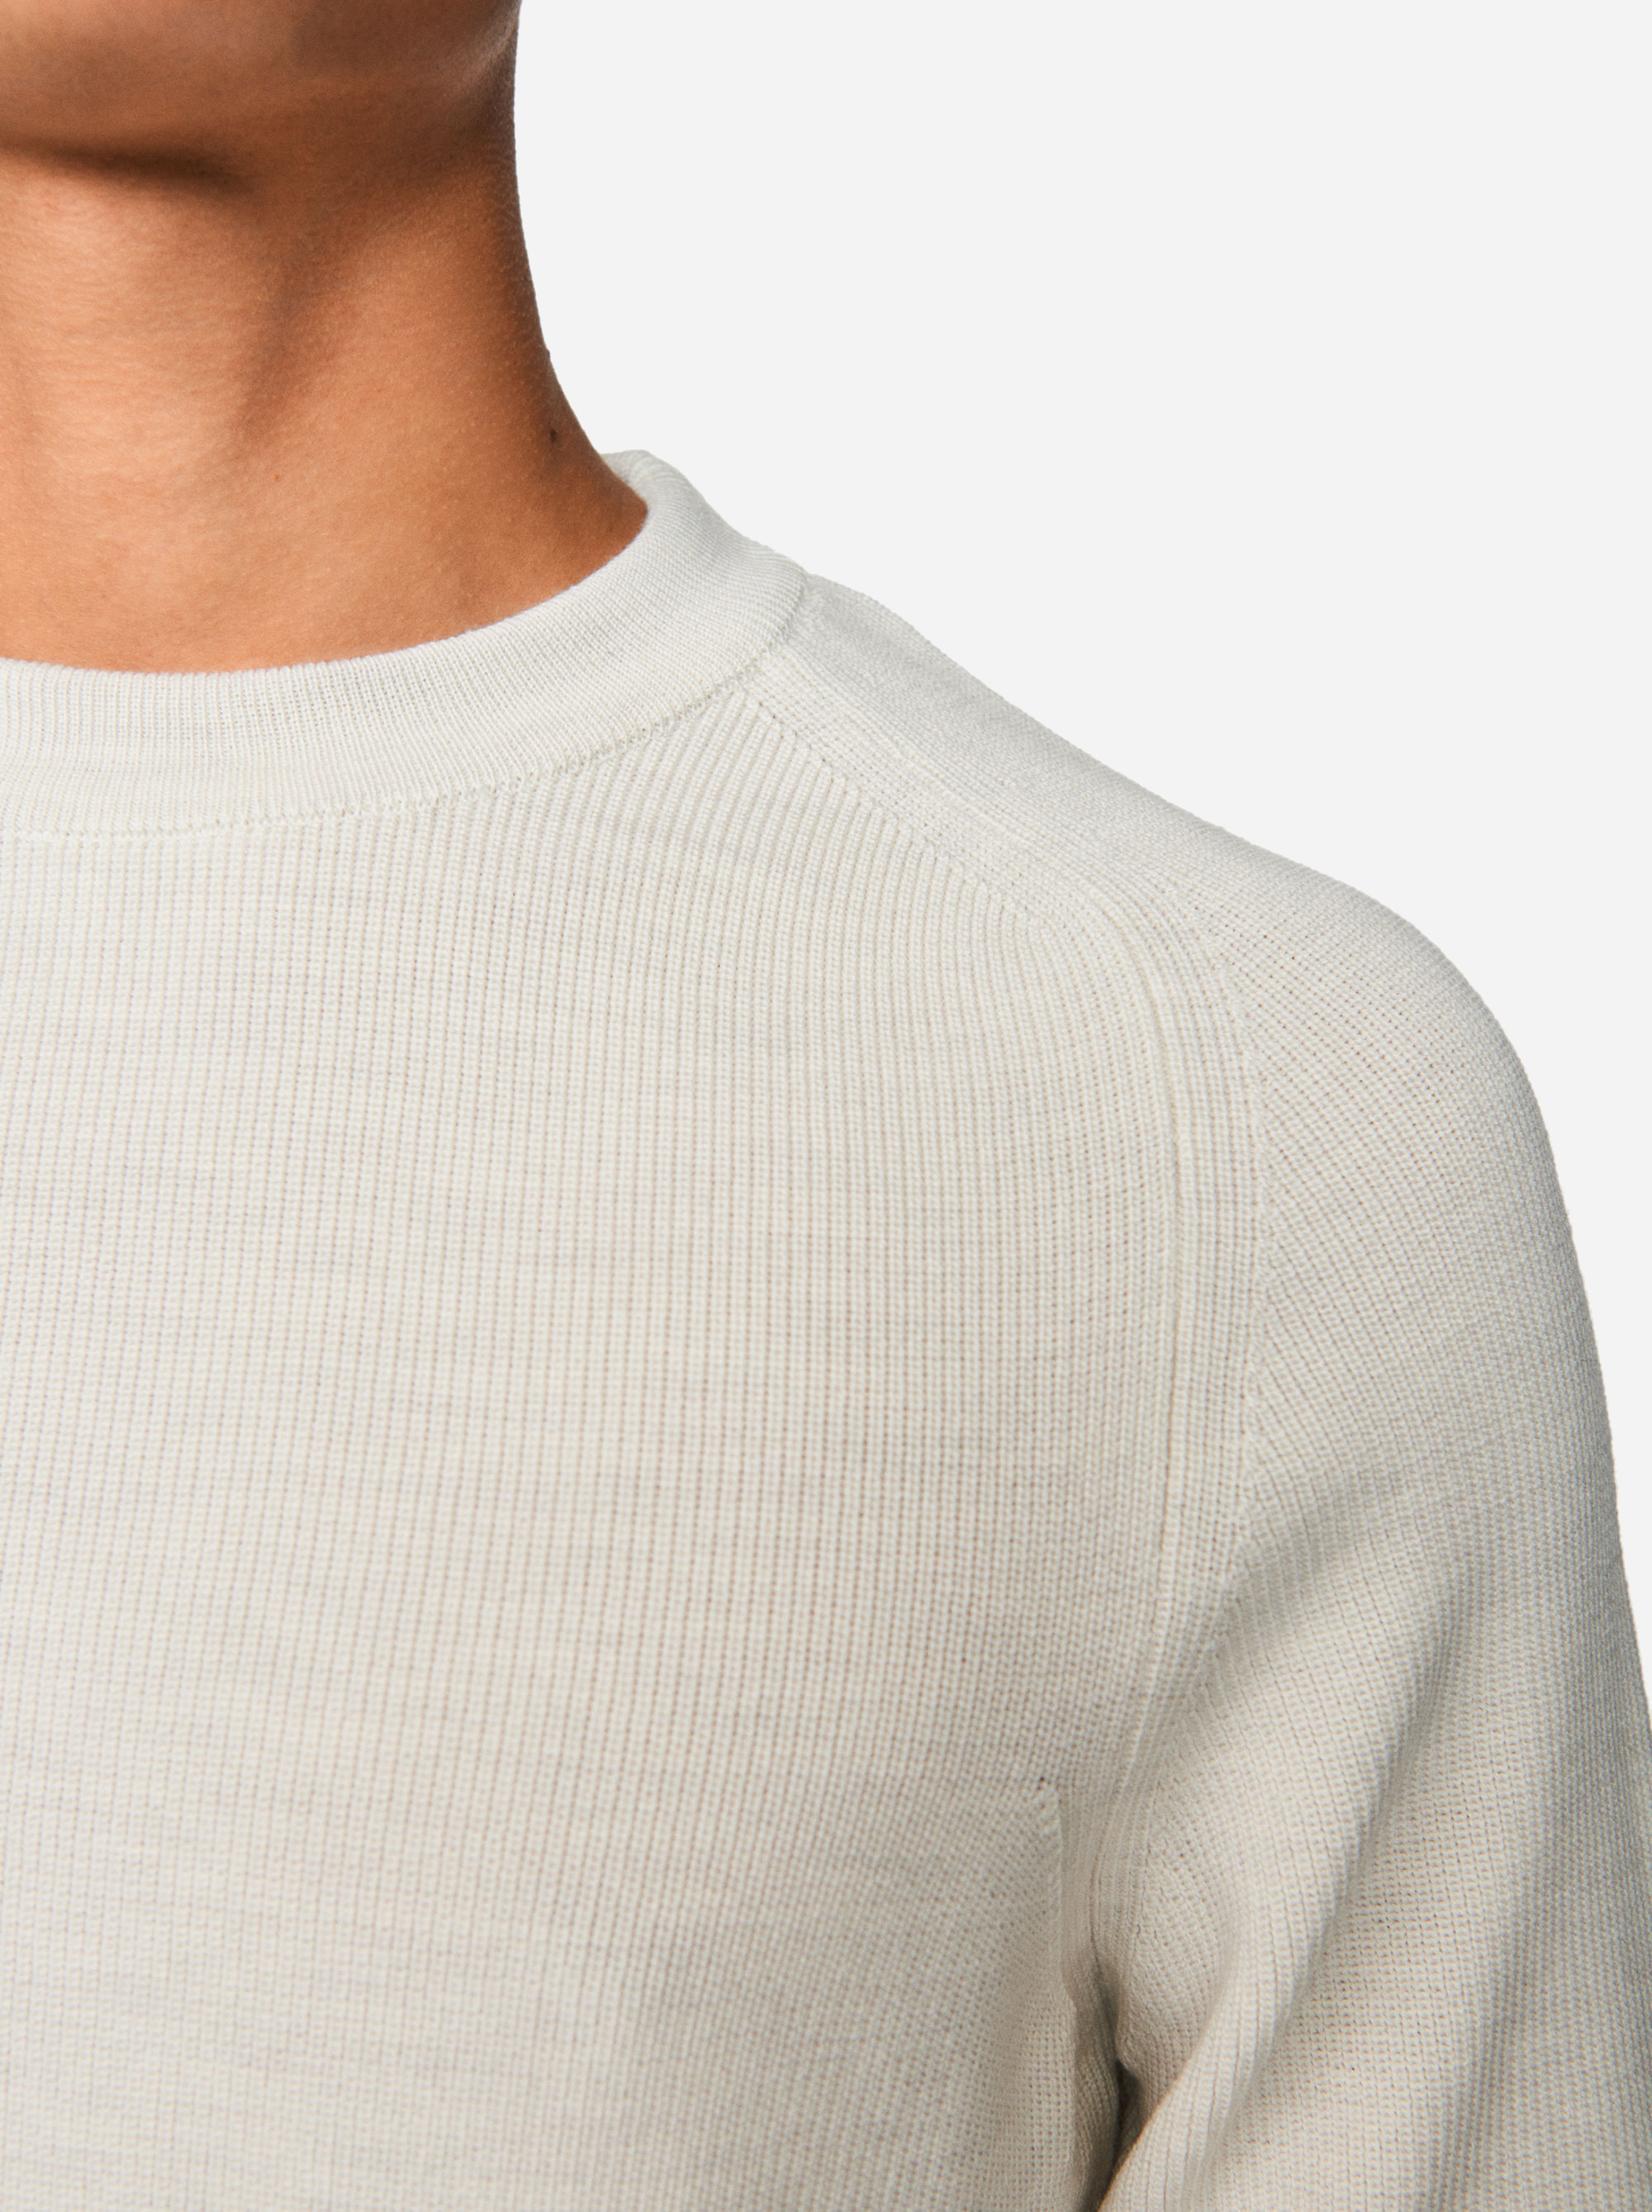 Teym - The Merino Sweater - Men - White - 3